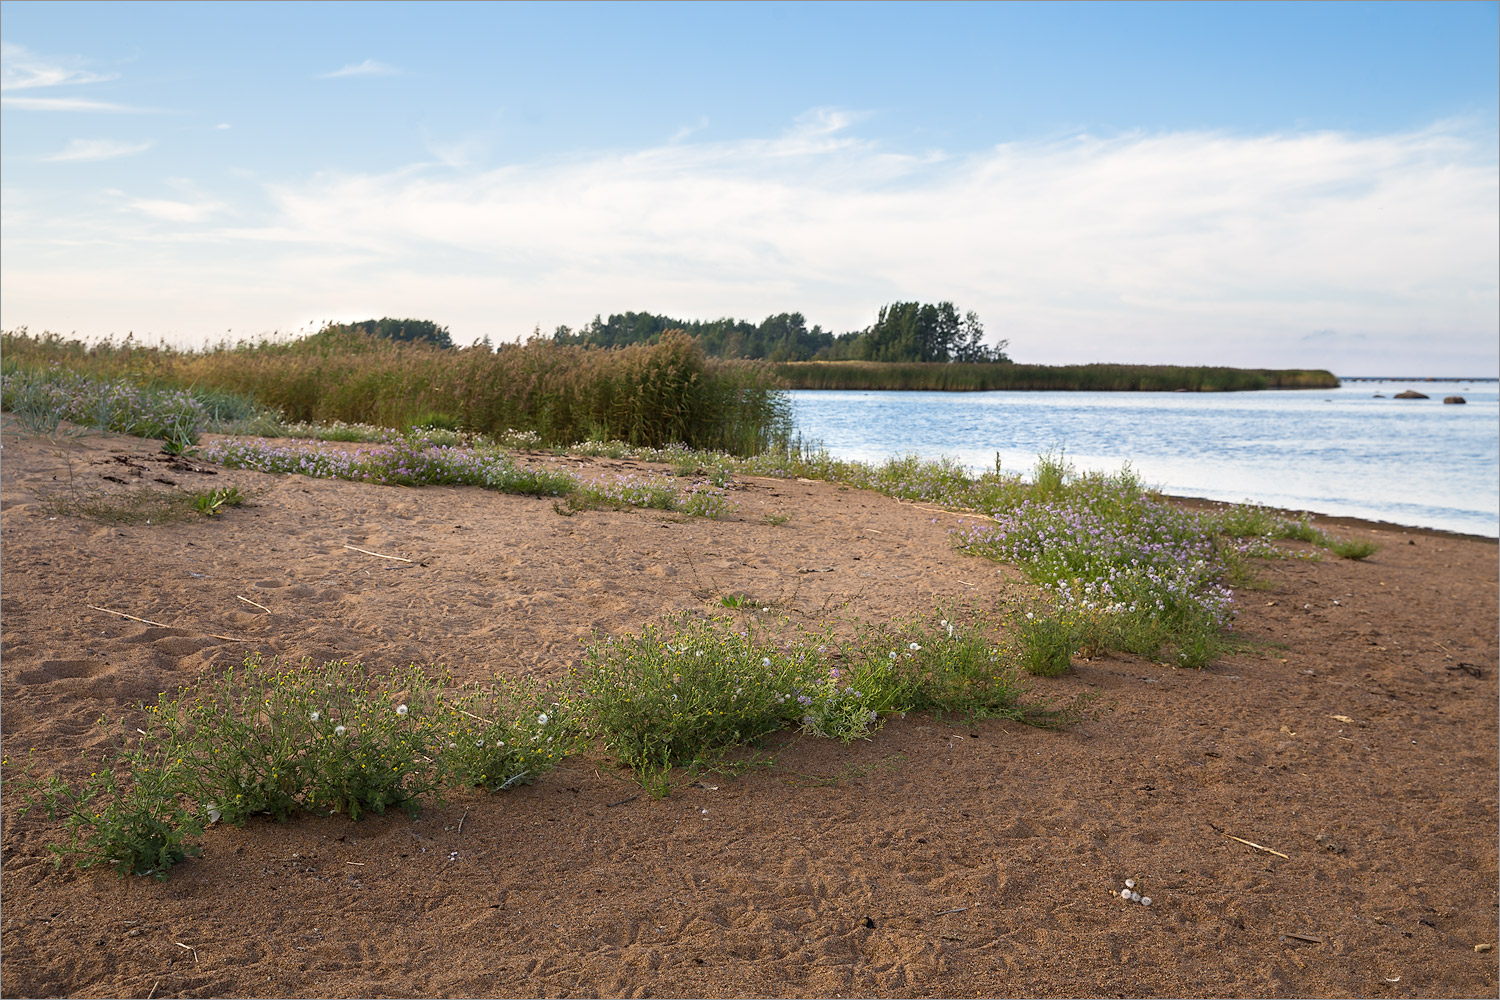 Кургальский риф, image of landscape/habitat.